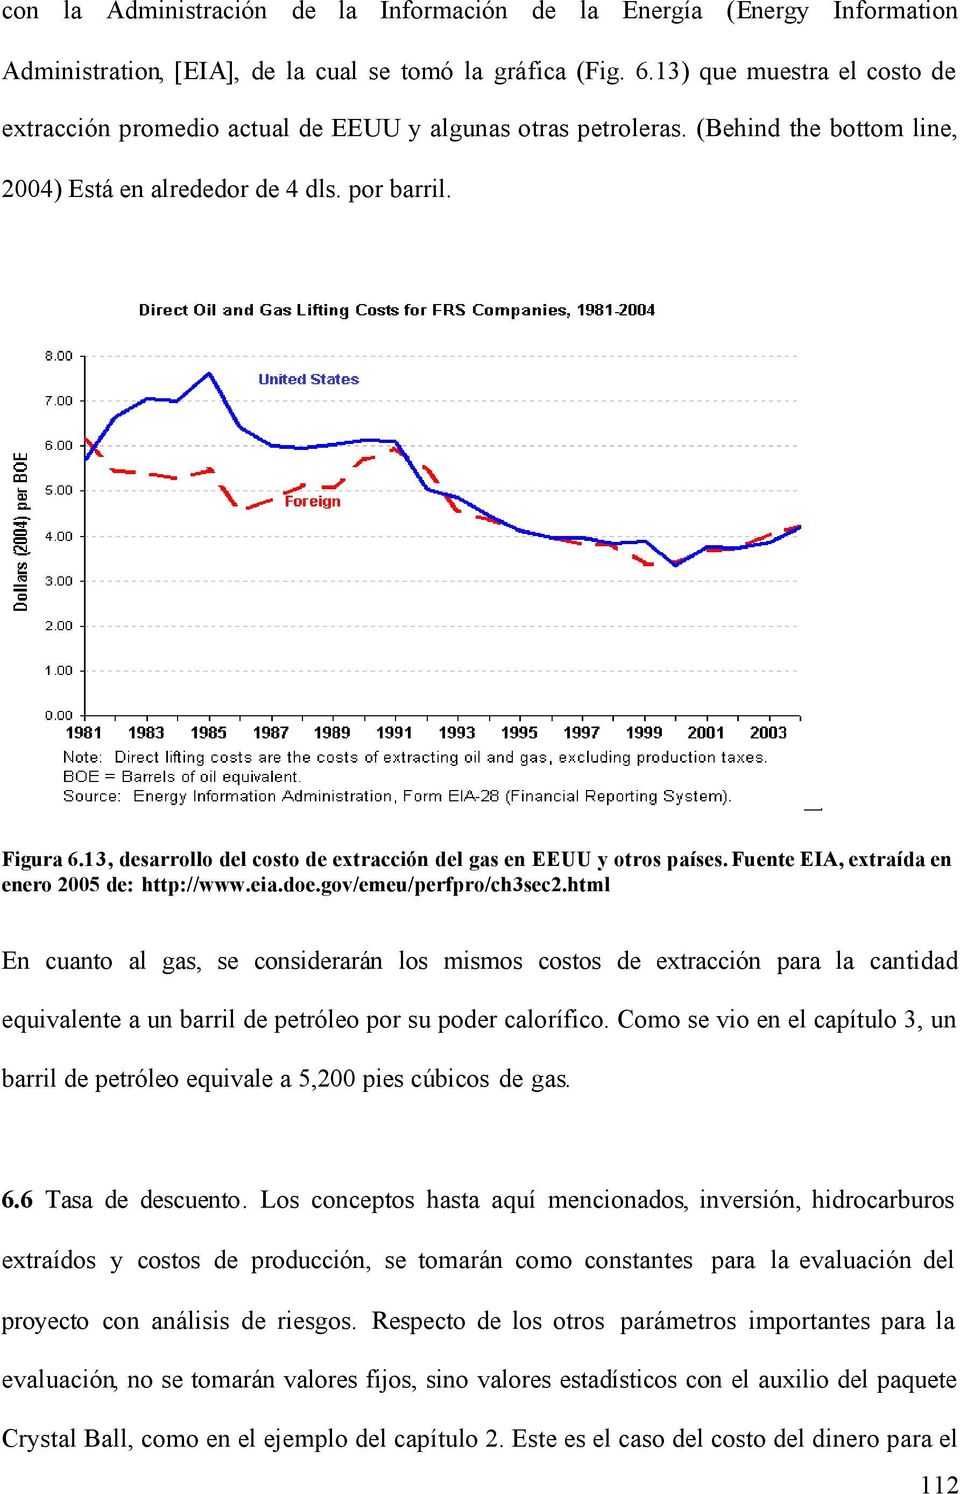 13, desarrollo del costo de extracción del gas en EEUU y otros países. Fuente EIA, extraída en enero 2005 de: http://www.eia.doe.gov/emeu/perfpro/ch3sec2.